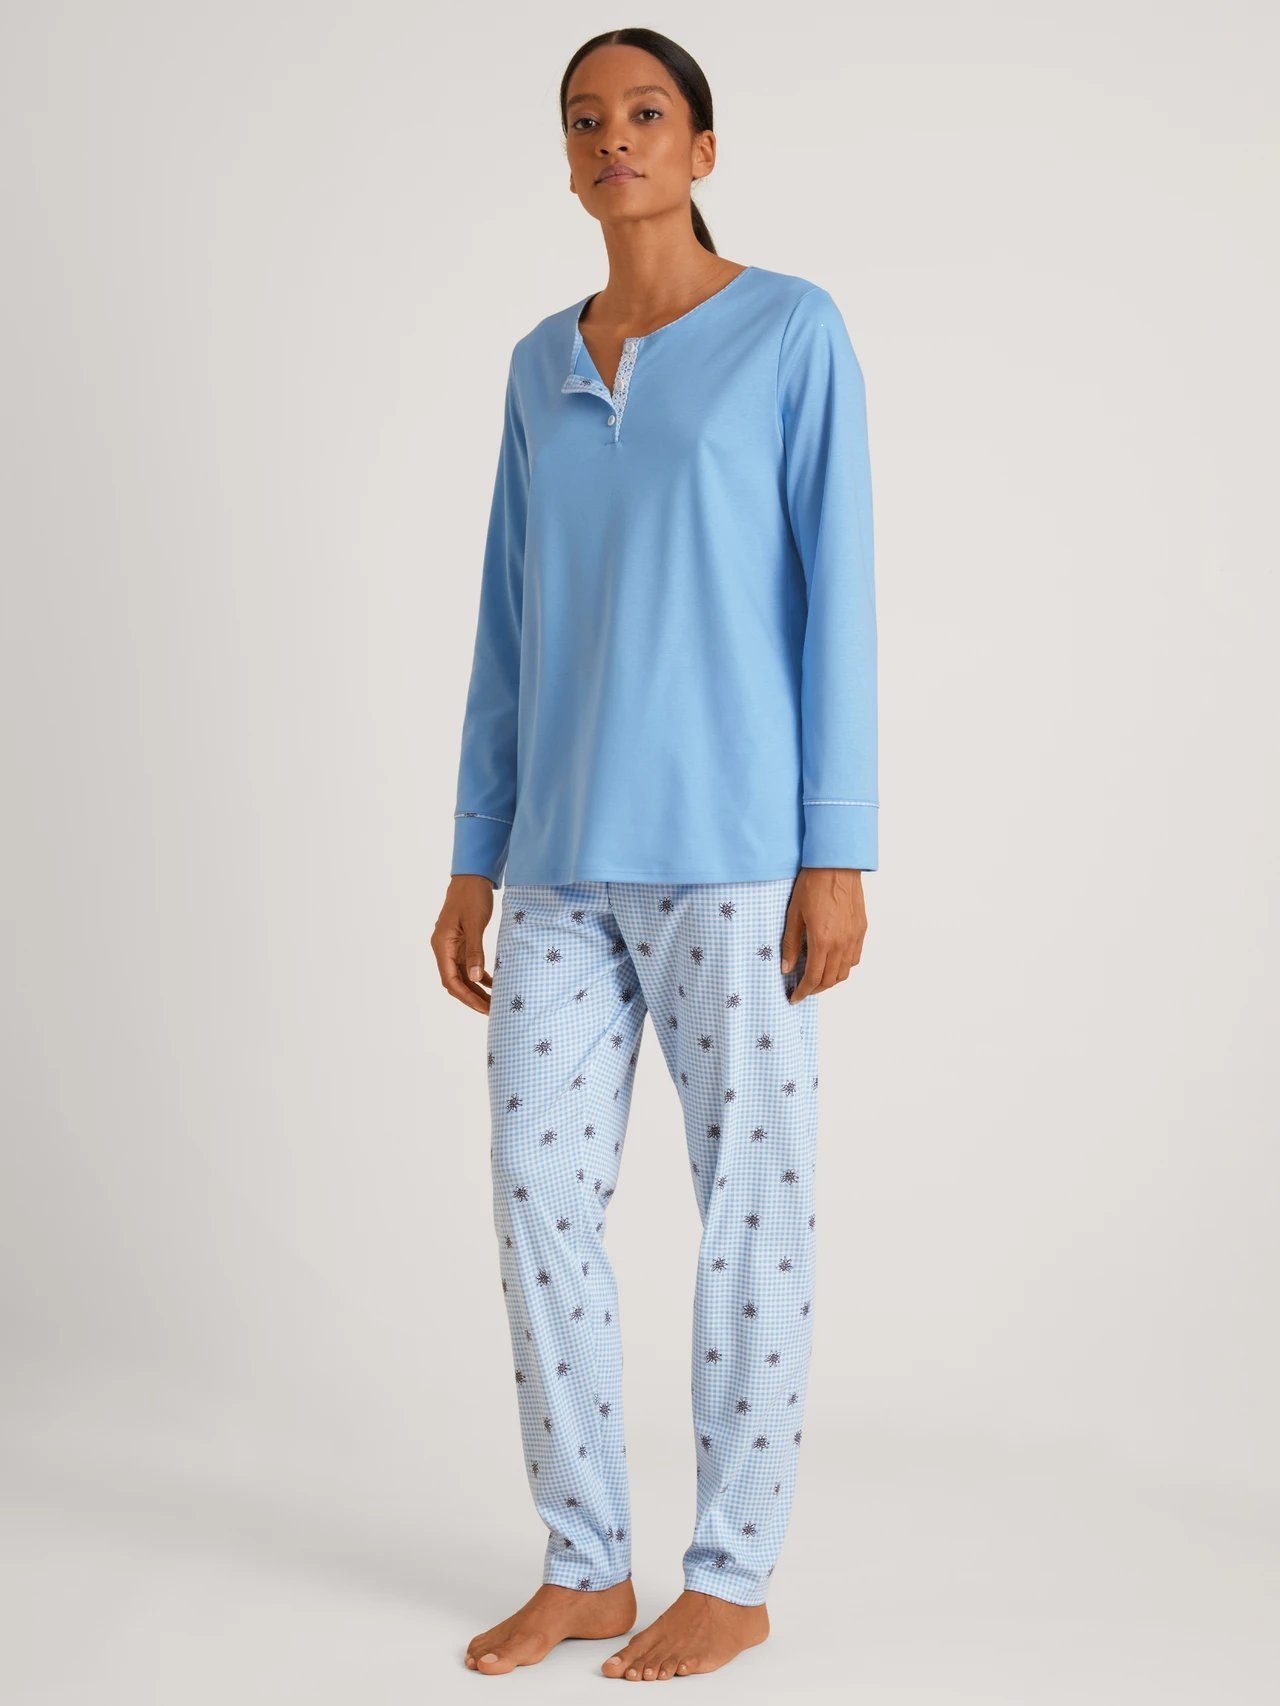 CALIDA Pyjama Calida Damen Pyjama 44553 placid blue (1 Stück, 1 tlg., 1 Stück)